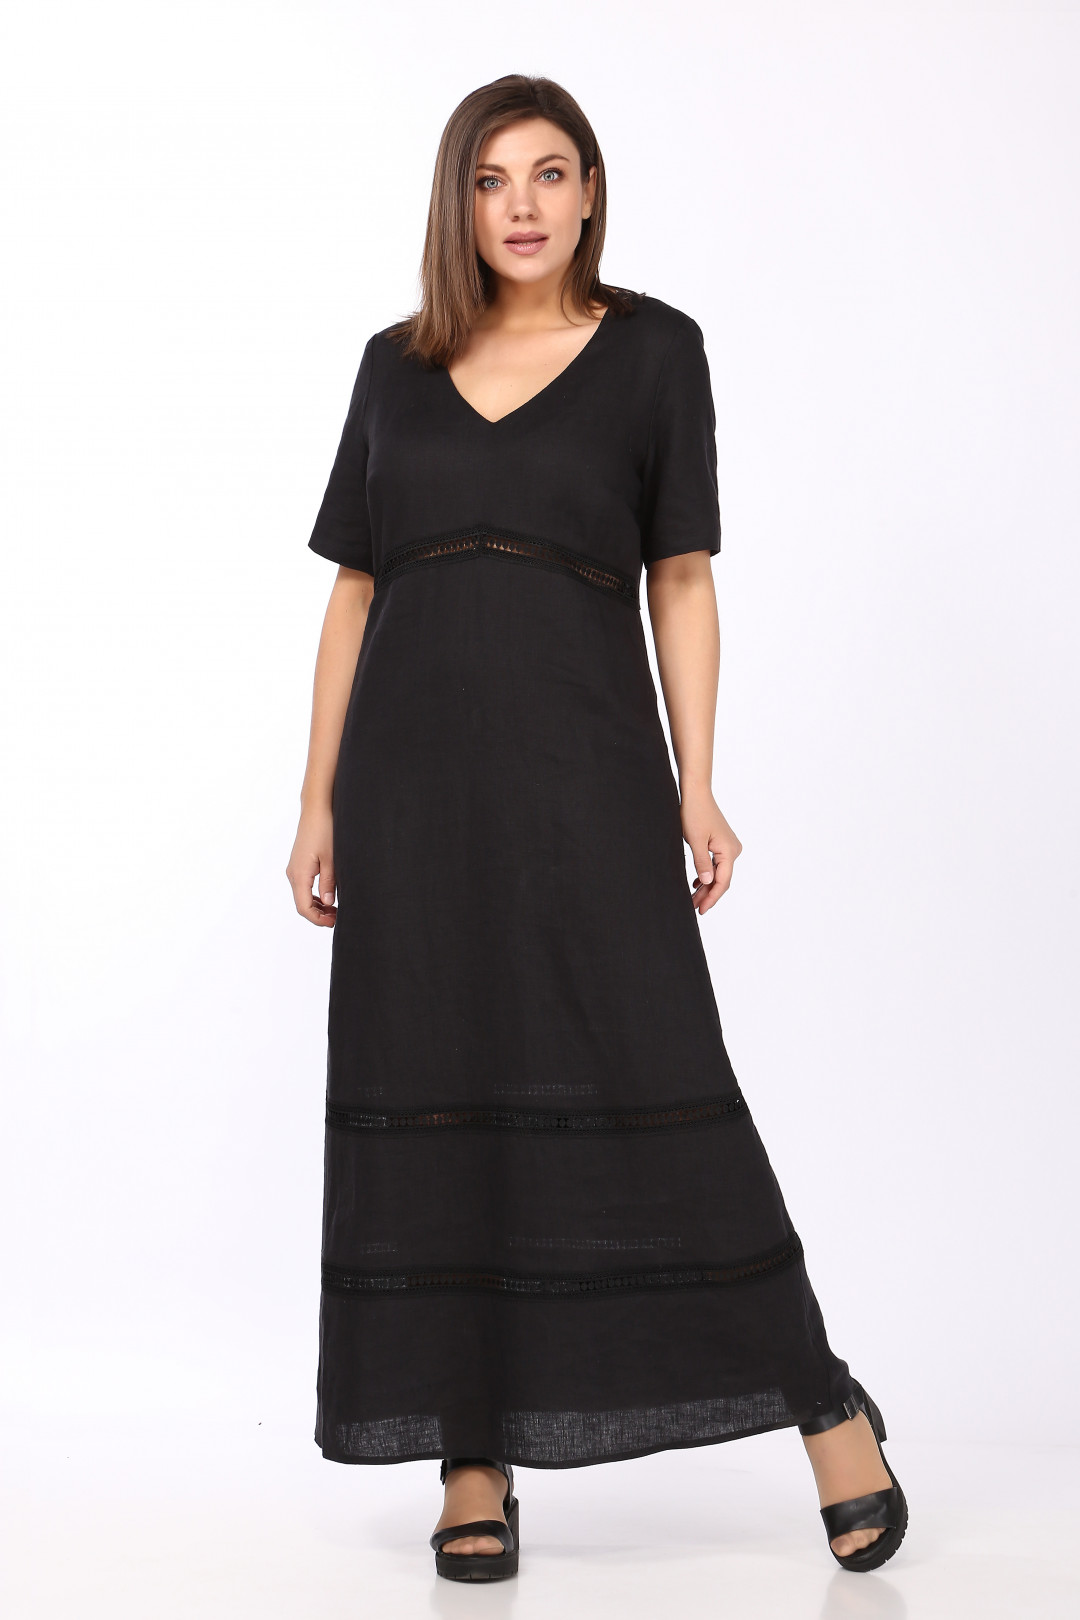 Платье LadySecret 3695 черный